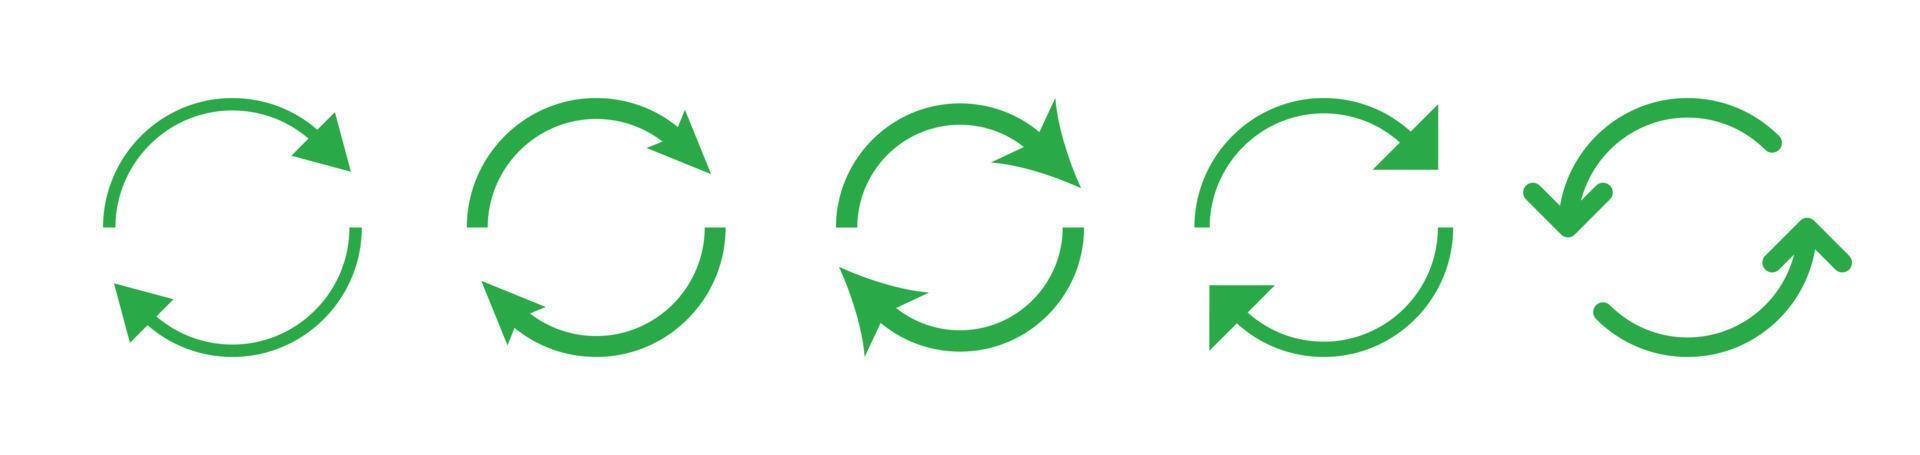 eco groen pijl icoon reeks eps10 - vector